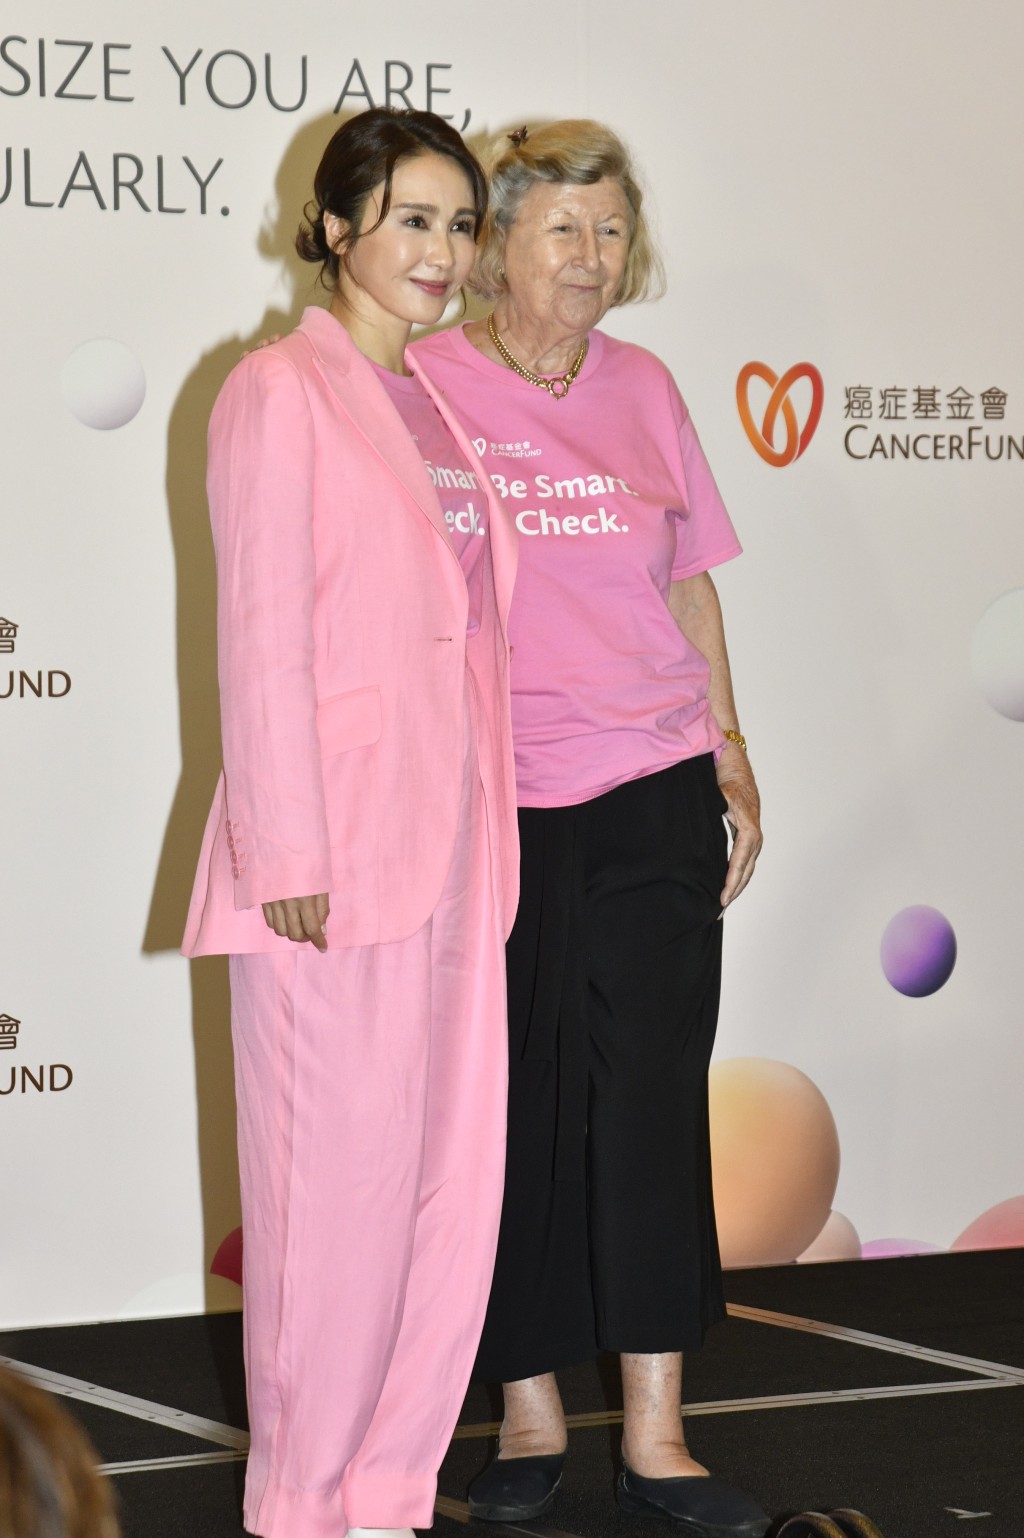 黎姿指活動很有意義，因乳癌在香港很常見，希望藉此宣揚女性能互相支持。